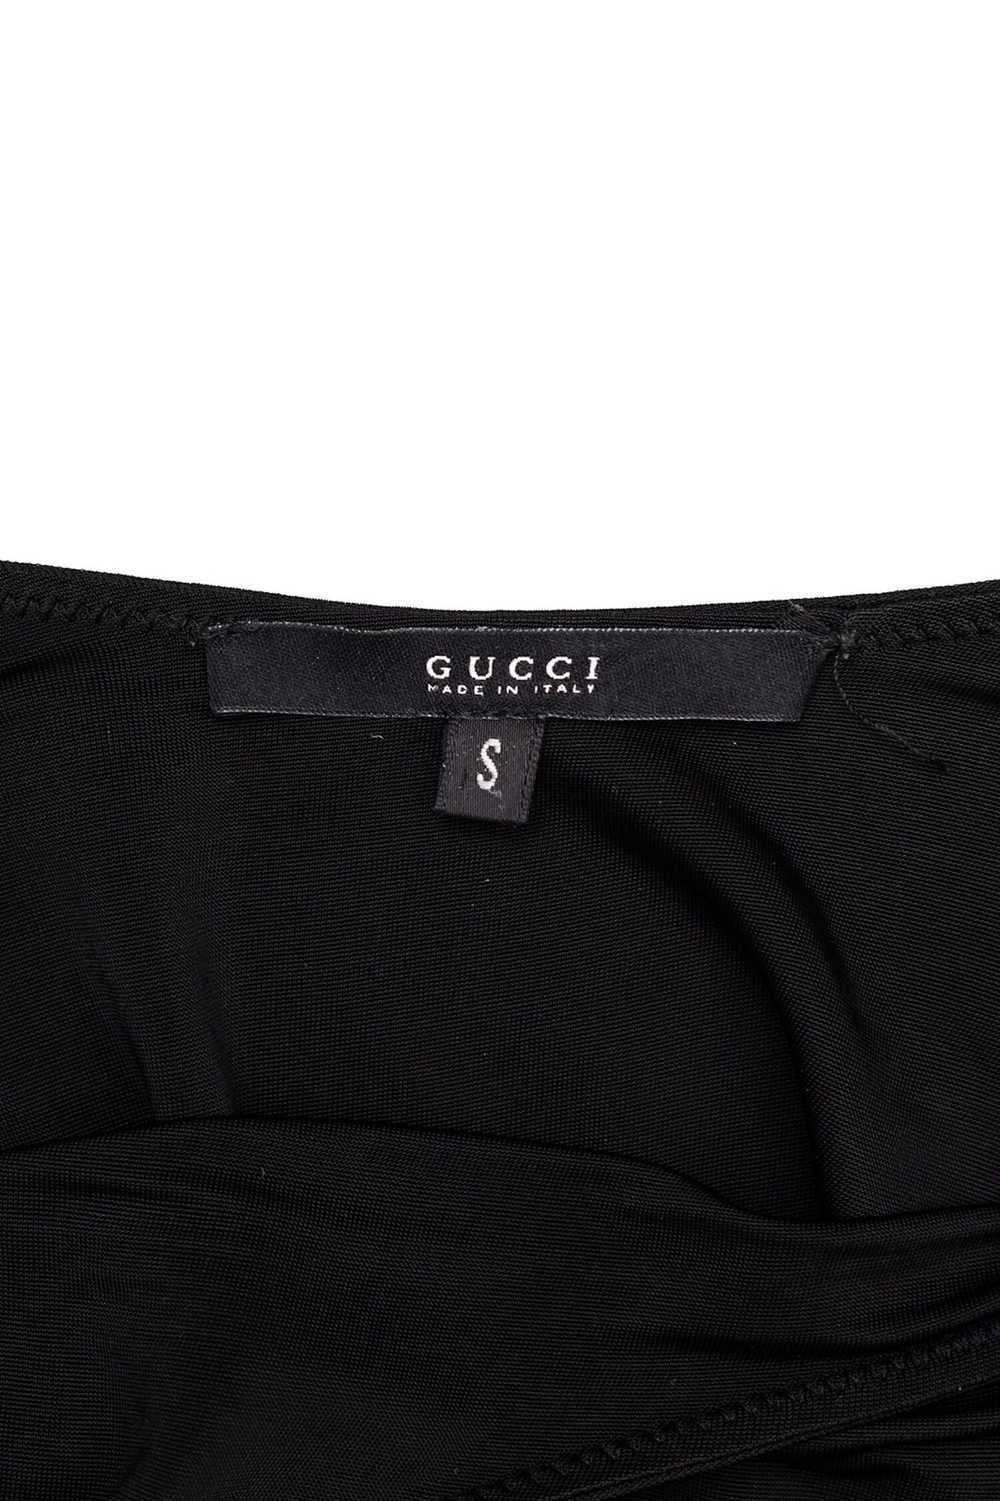 Gucci Gucci Black Jersey Bondage Buckle Mini Dres… - image 6